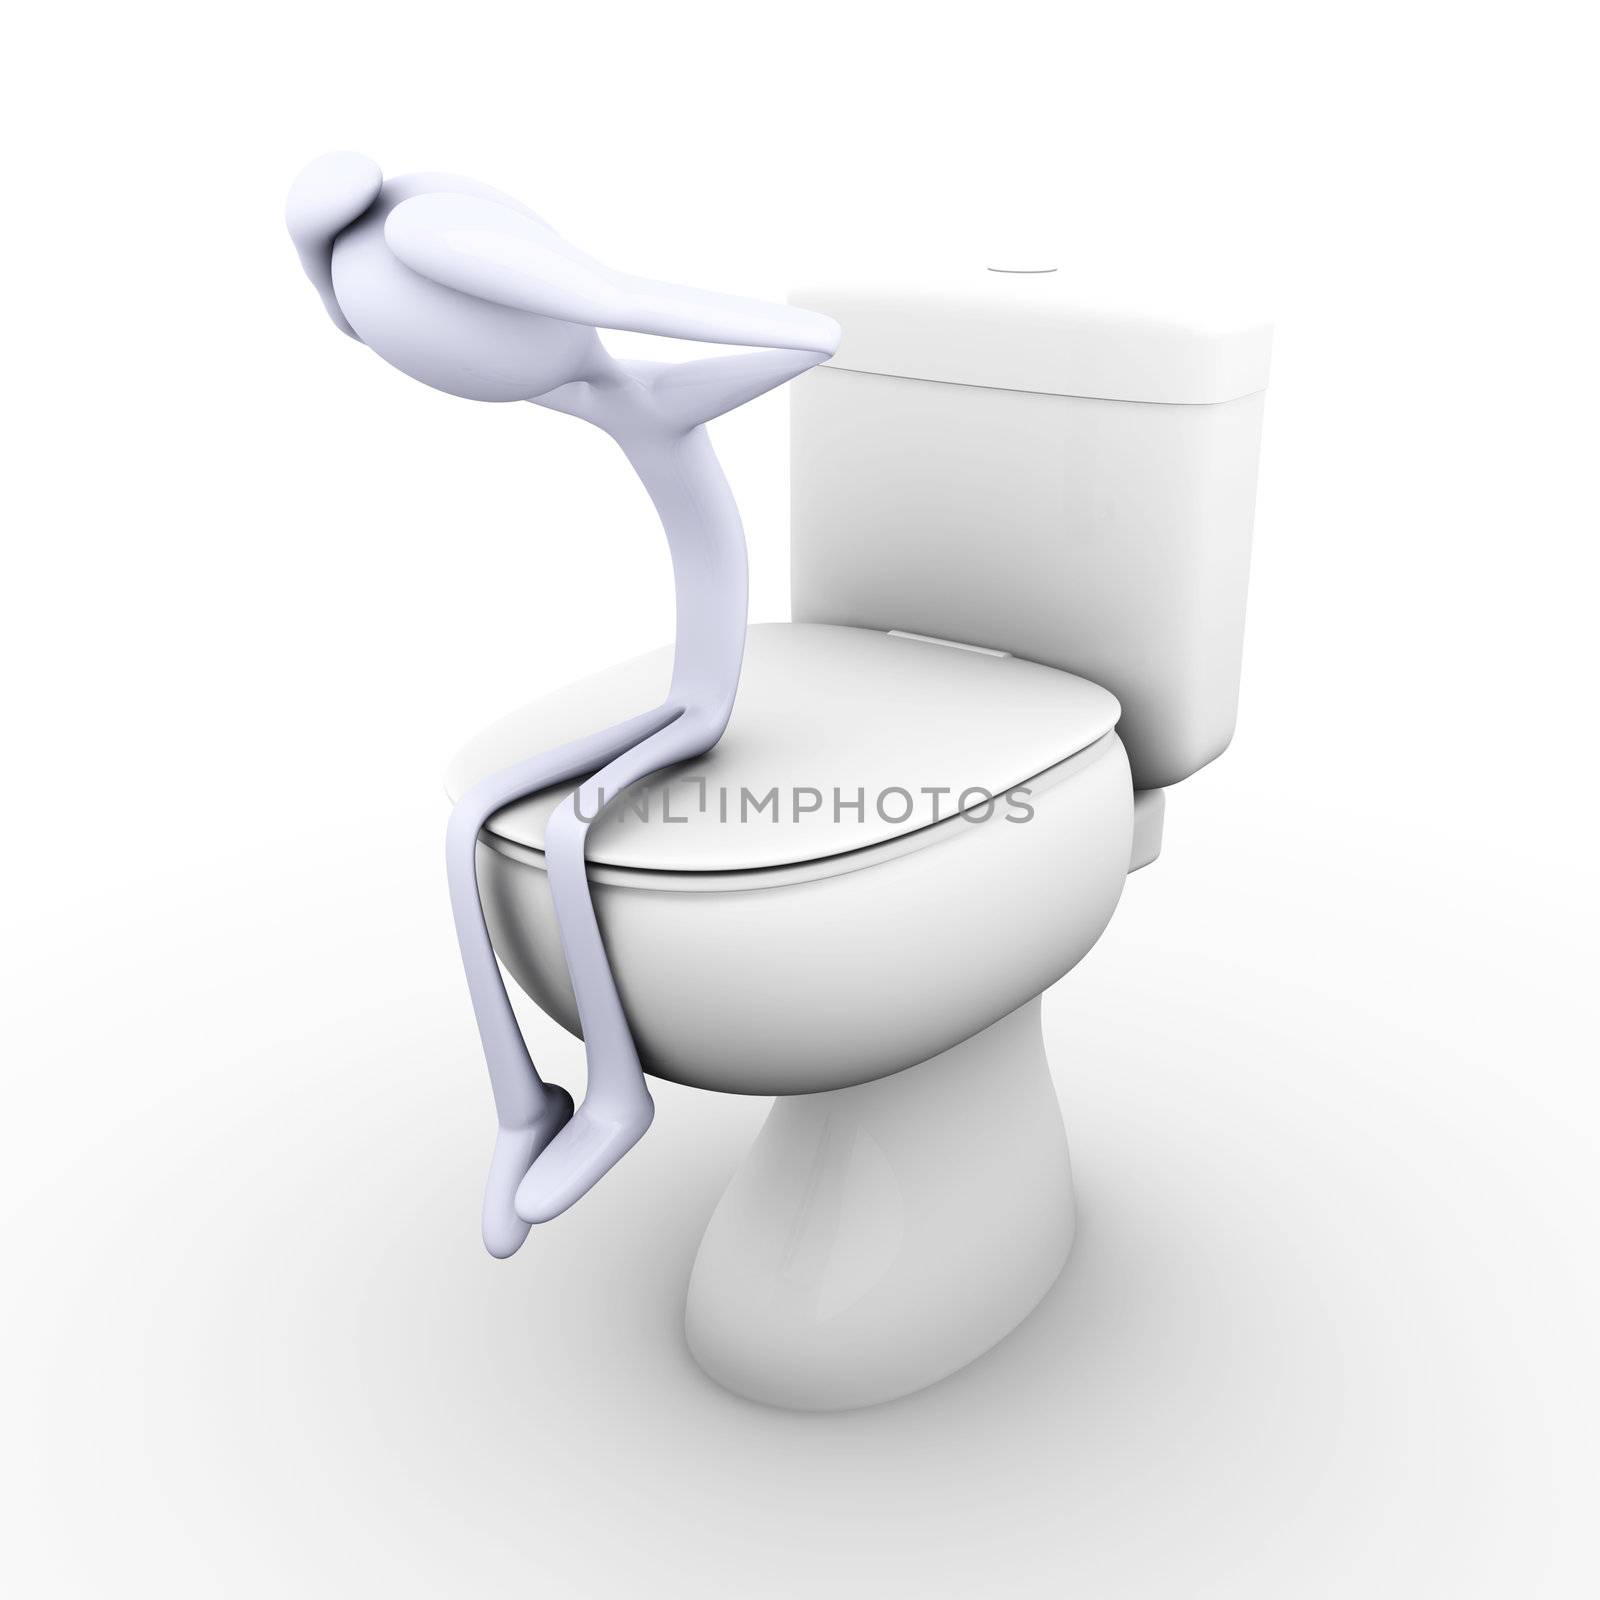 3D rendered Illustration. Being Sad in the restroom.